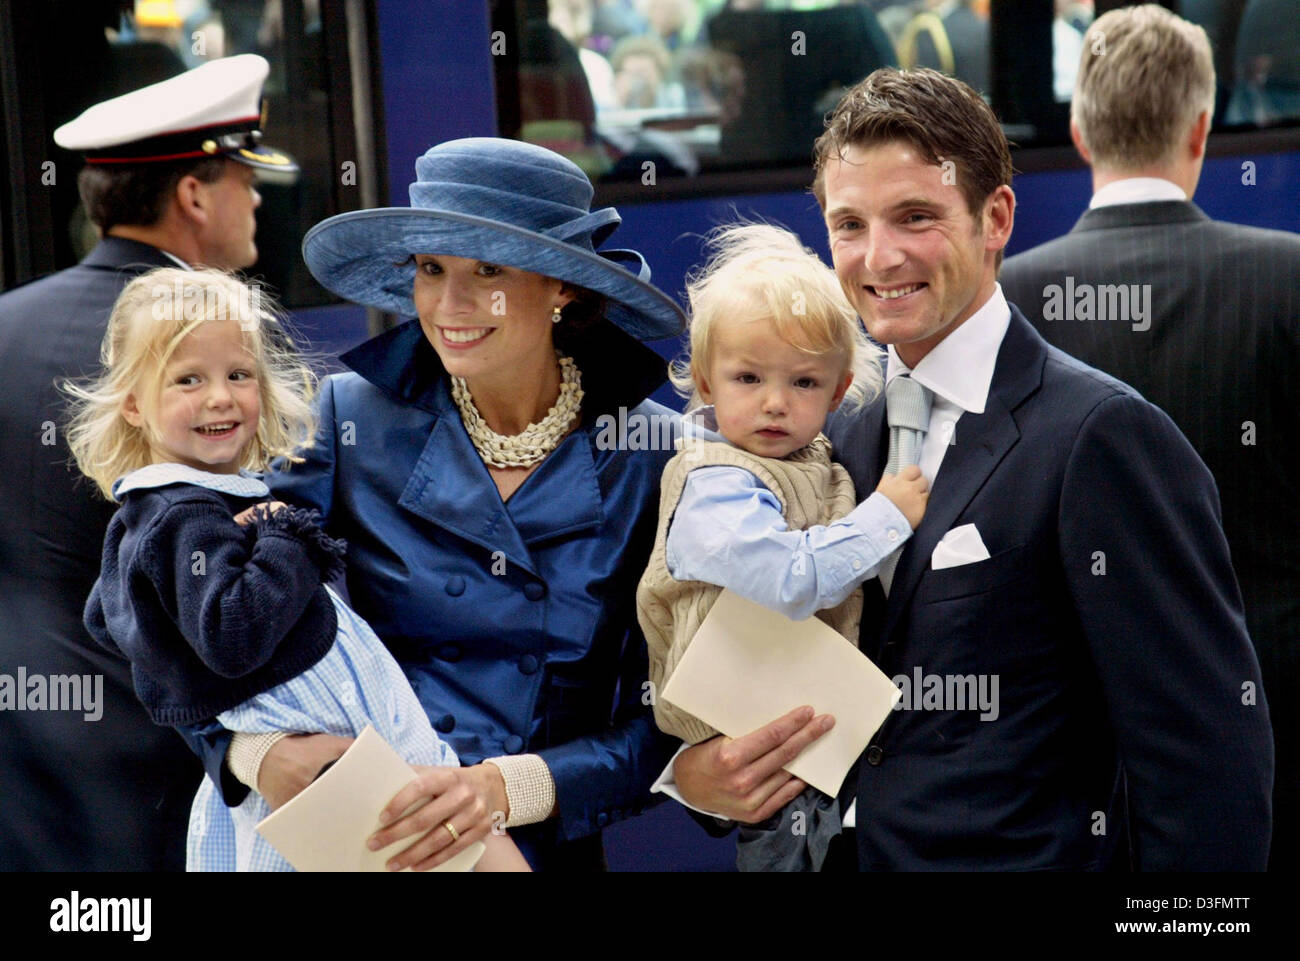 Los archivos de datos (DPA) - El Príncipe Maurits y la Princesa Marilene de Holanda sonrisa junto con sus dos hijos, Anna y Lucas en La Haya, Países Bajos, 12 de junio de 2004. La pareja real espera un tercer hijo en junio de 2005, informó la agencia de noticias holandesa Royal RVD el 26 de noviembre de 2004. Foto de stock